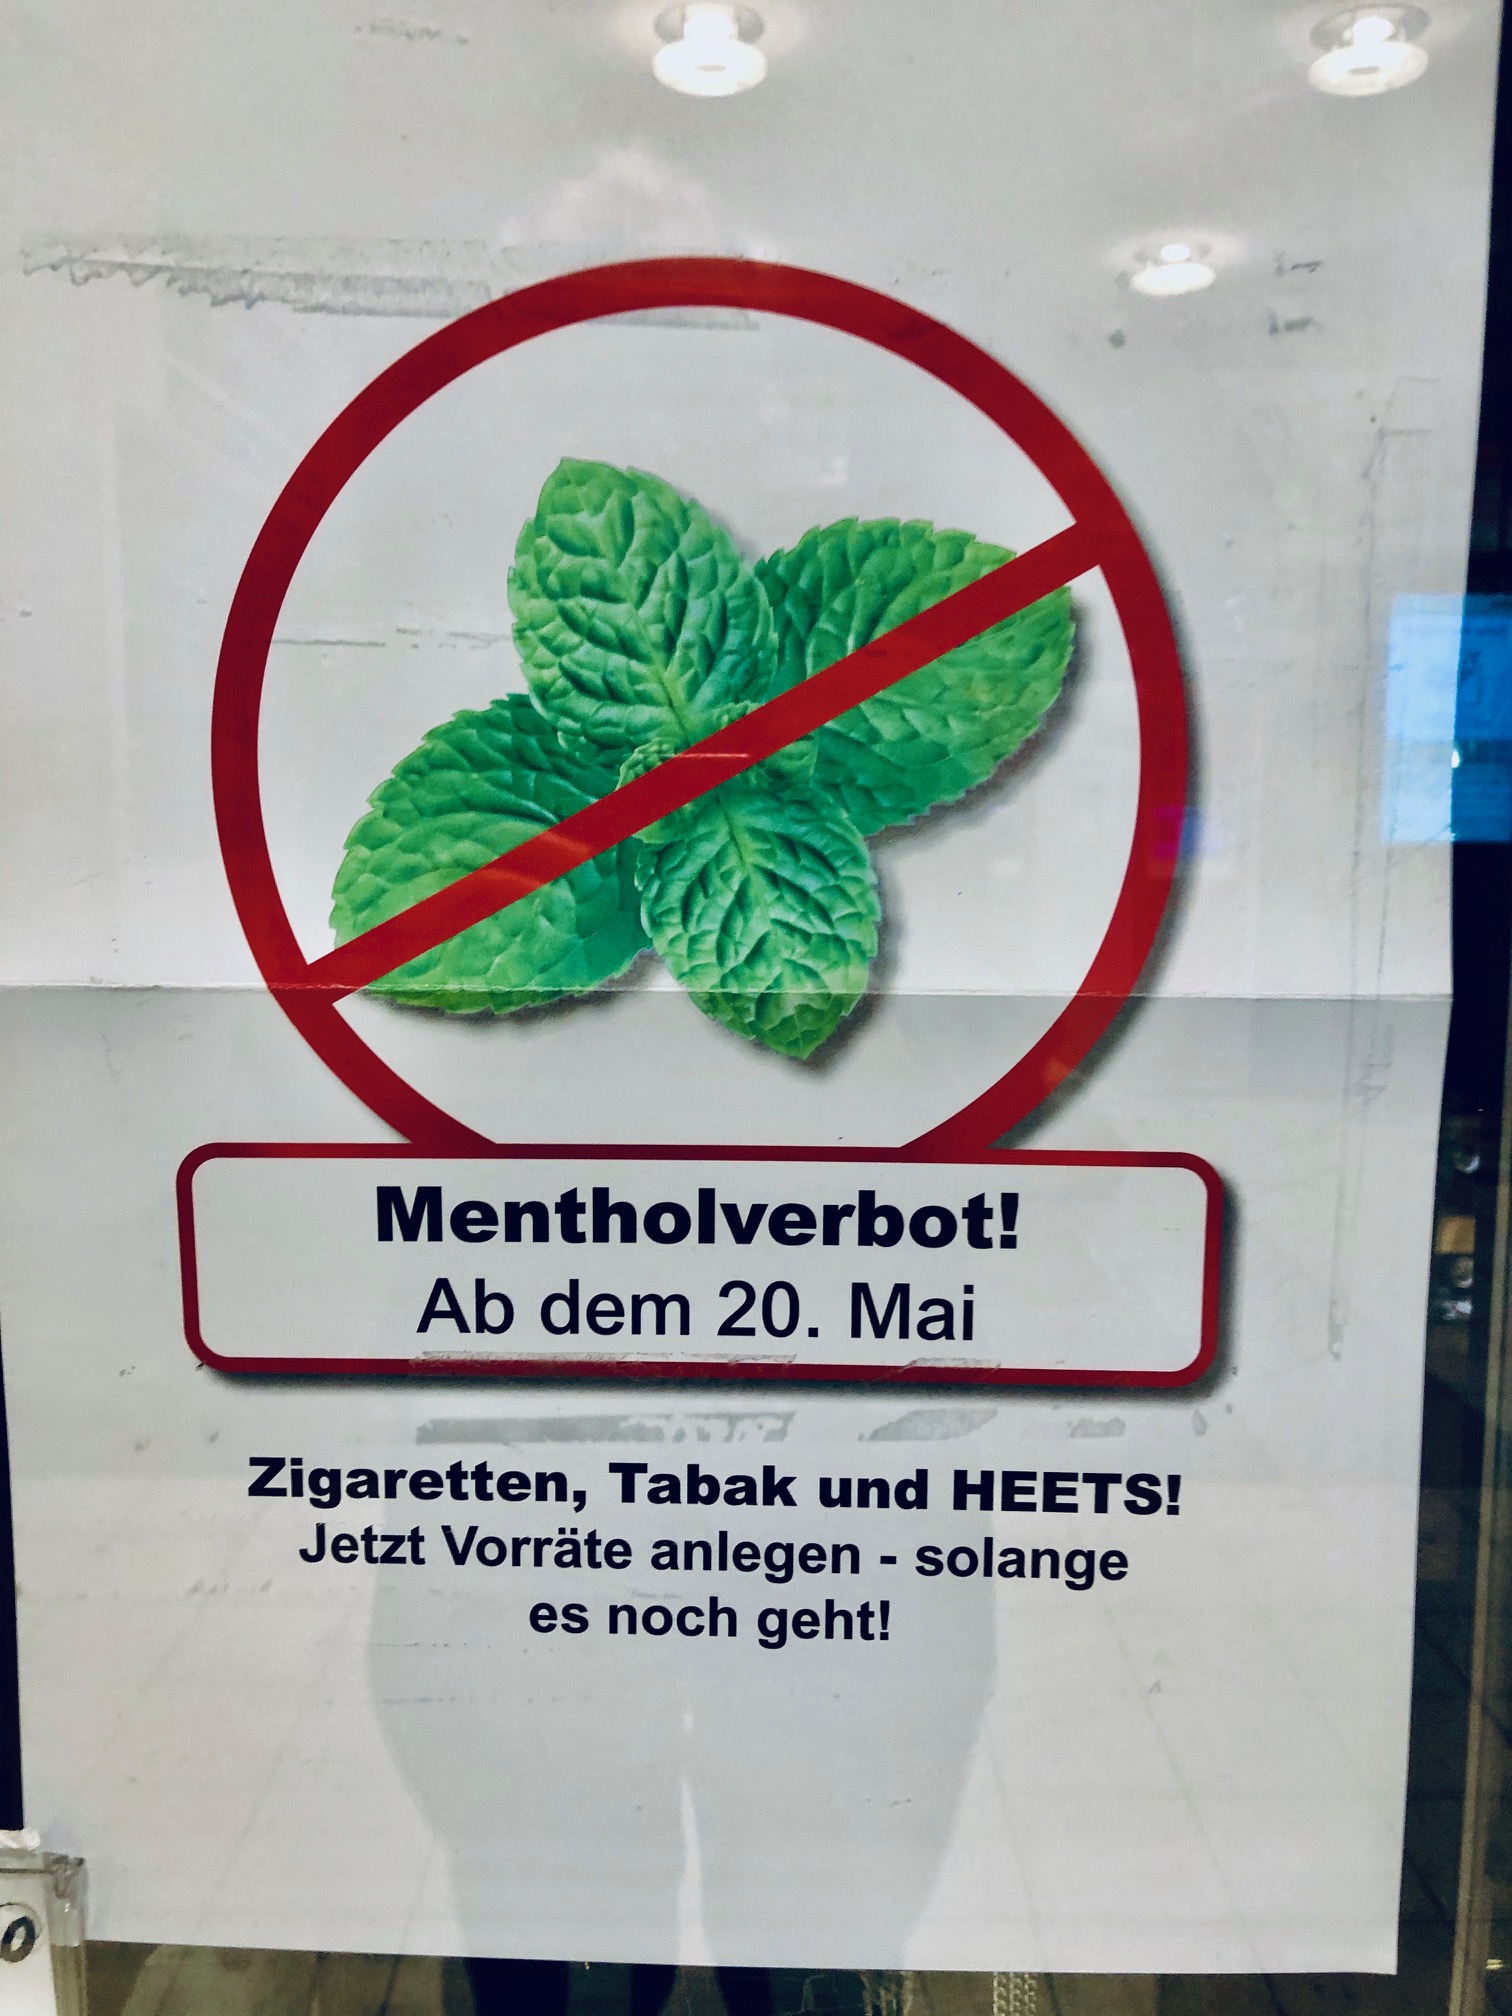 Schamlose Missachtung des Verbots von Menthol-Zigaretten